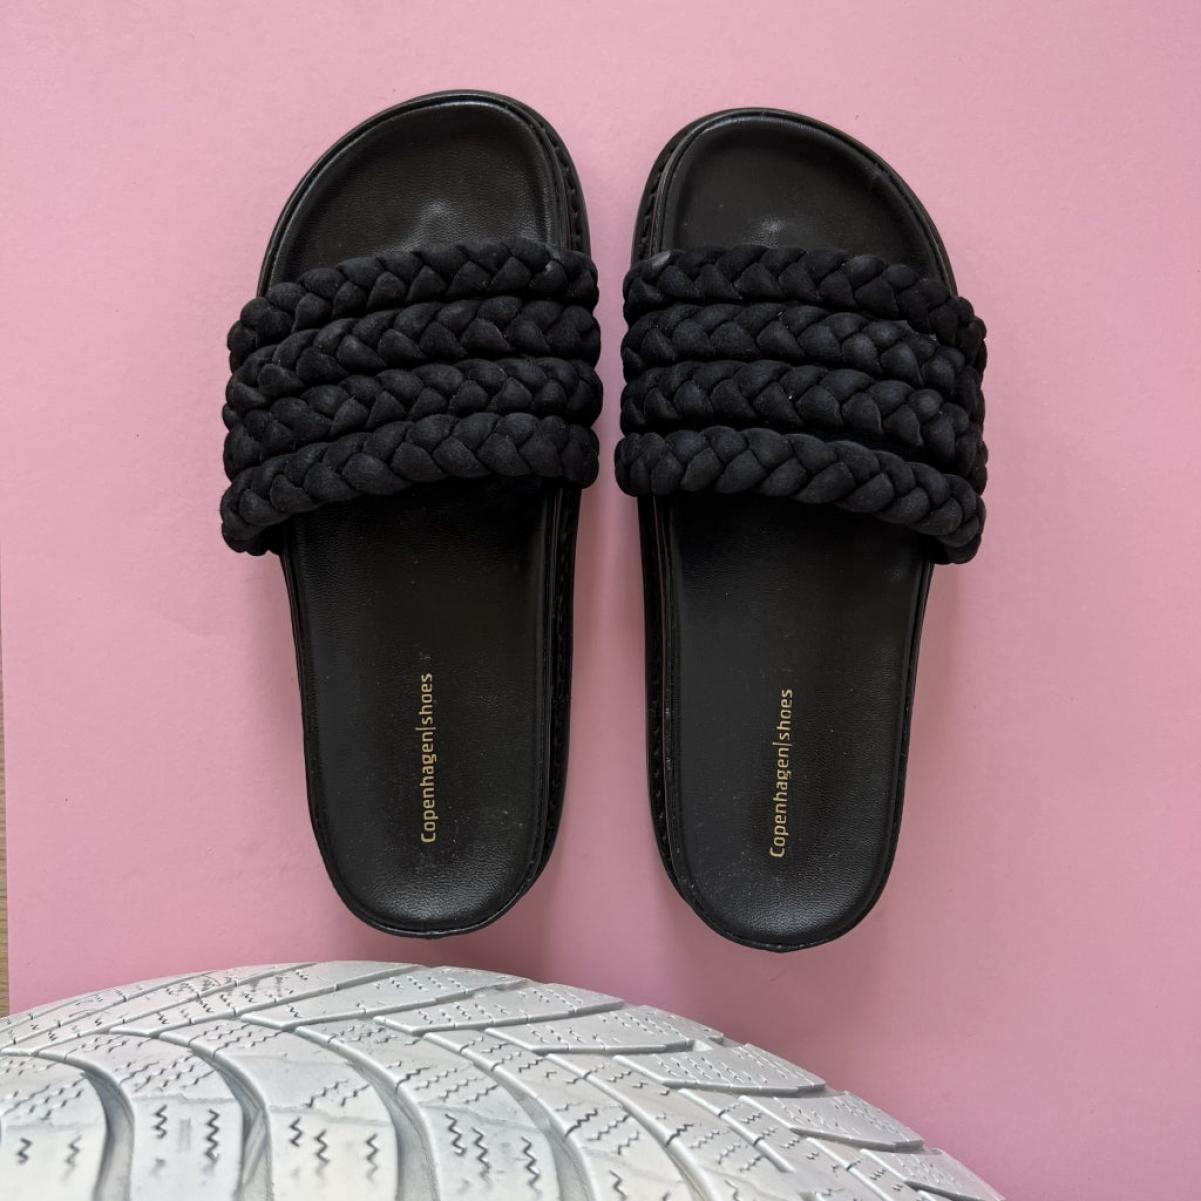 Copenhagen Shoes When Sun Comes - Black Sandals Women Simple